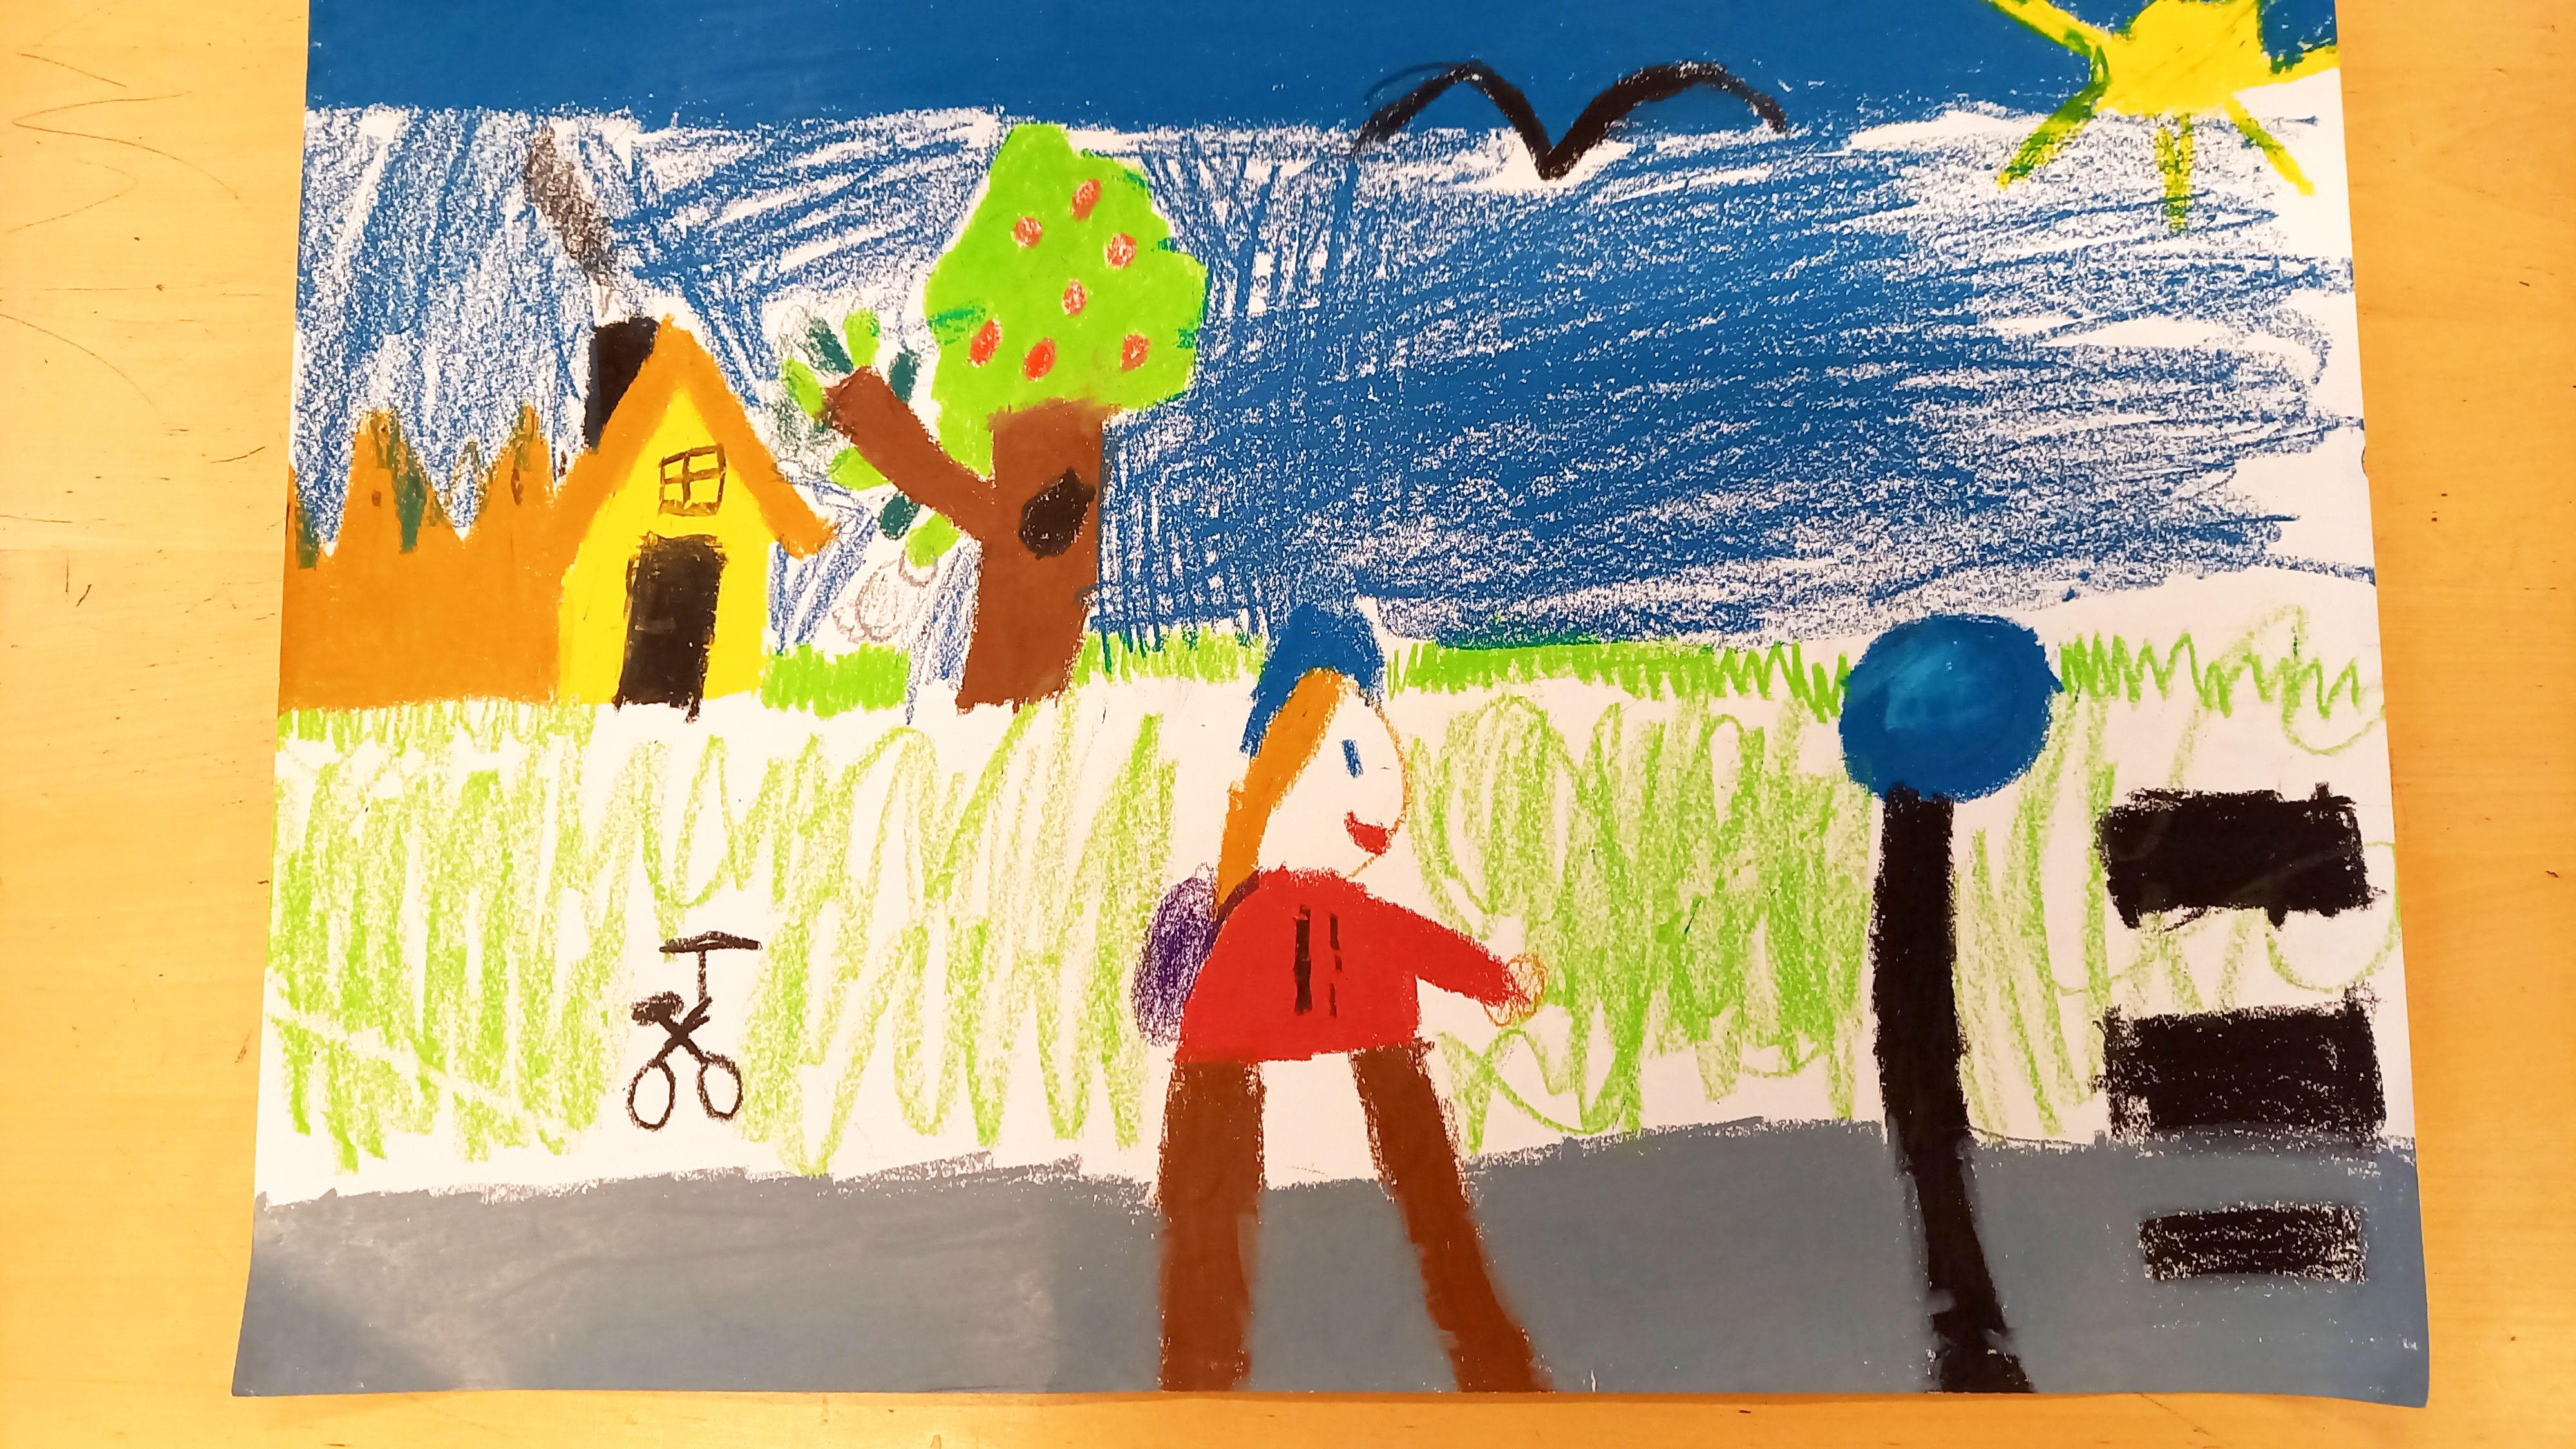 Lapsen piirustus, jossa keltainen talo, hedelmää ja jalankulkija.